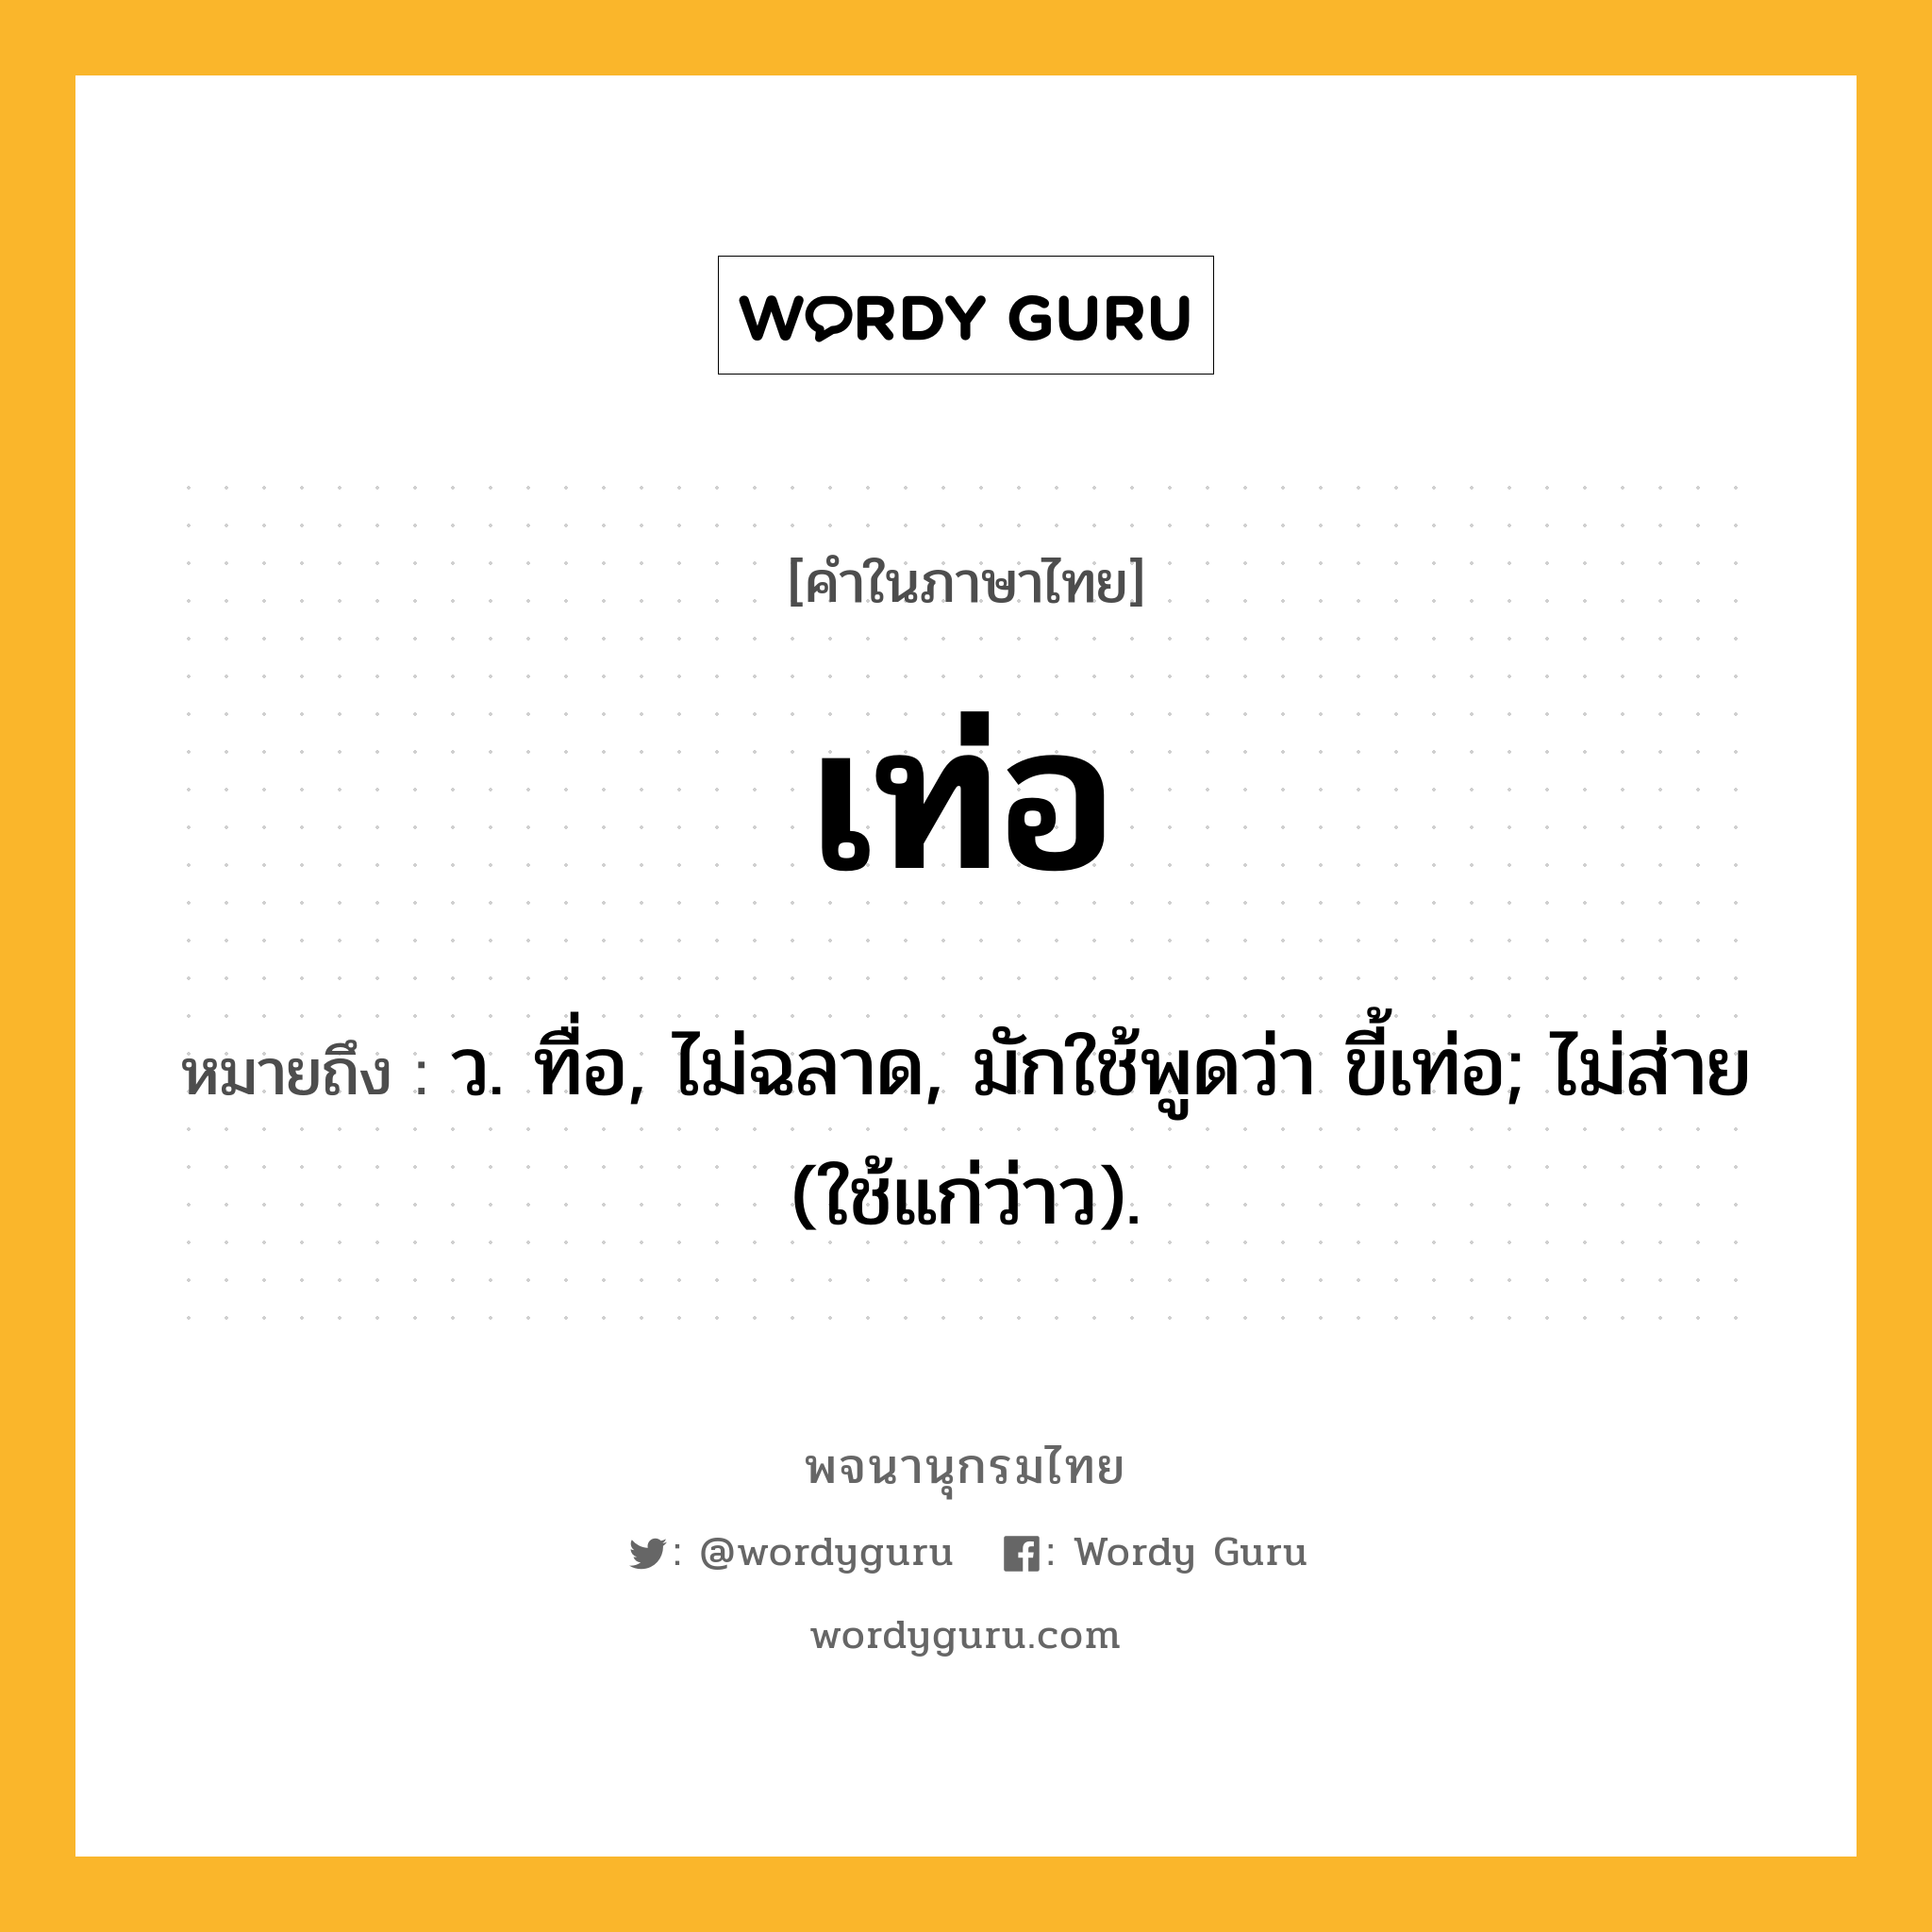 เท่อ หมายถึงอะไร?, คำในภาษาไทย เท่อ หมายถึง ว. ทื่อ, ไม่ฉลาด, มักใช้พูดว่า ขี้เท่อ; ไม่ส่าย (ใช้แก่ว่าว).